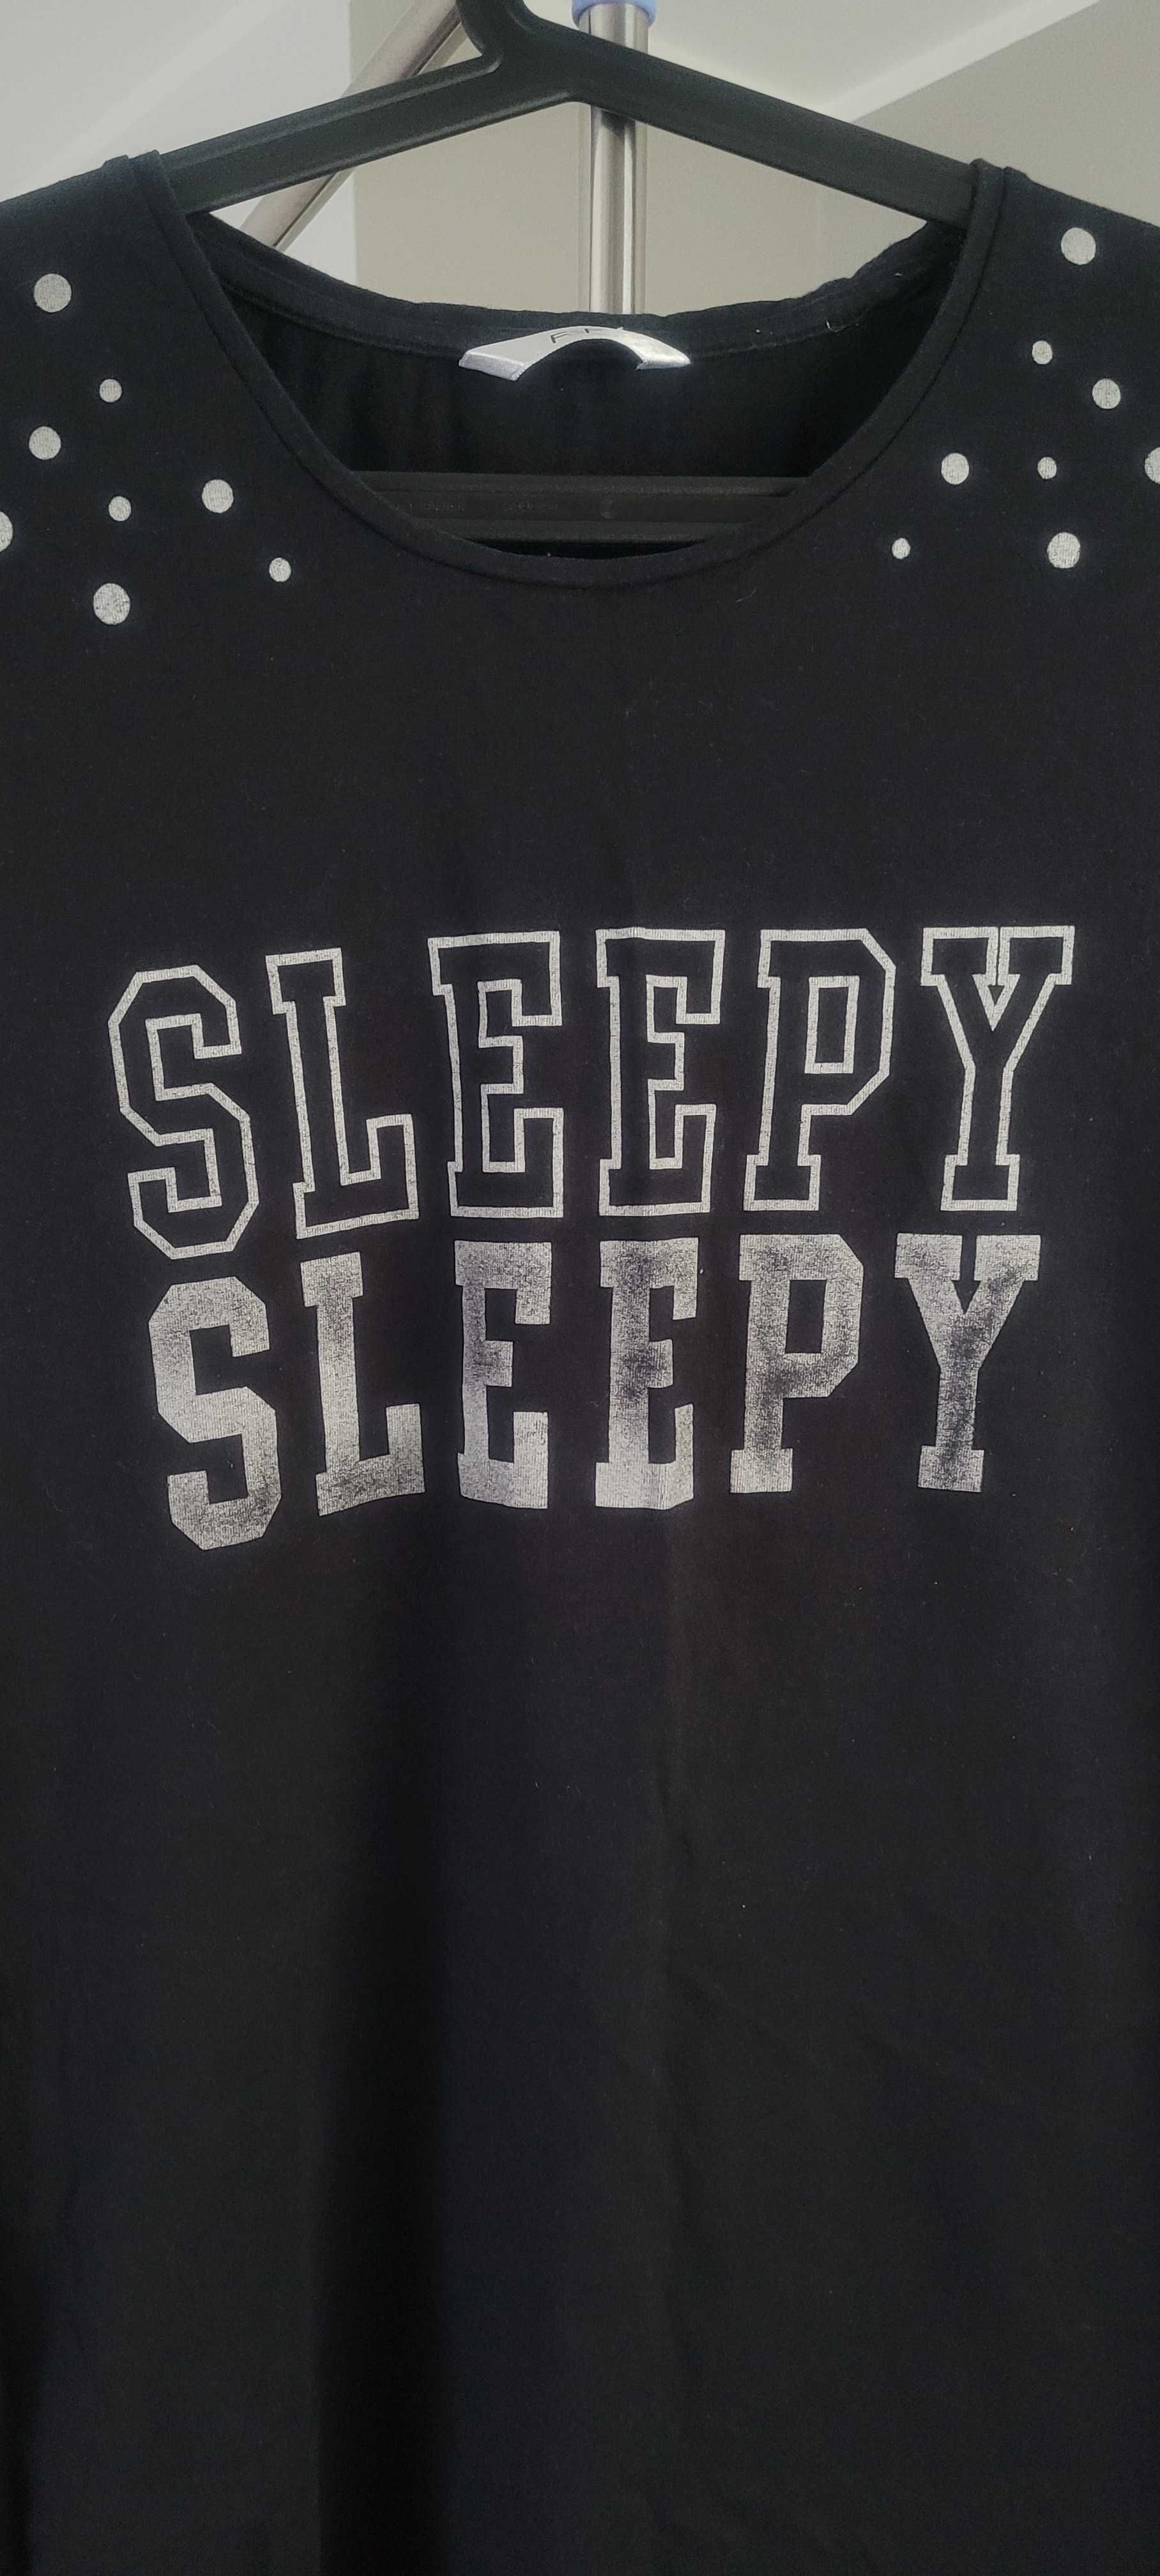 Piżama koszula nocna z napisem Sleepy roz. L